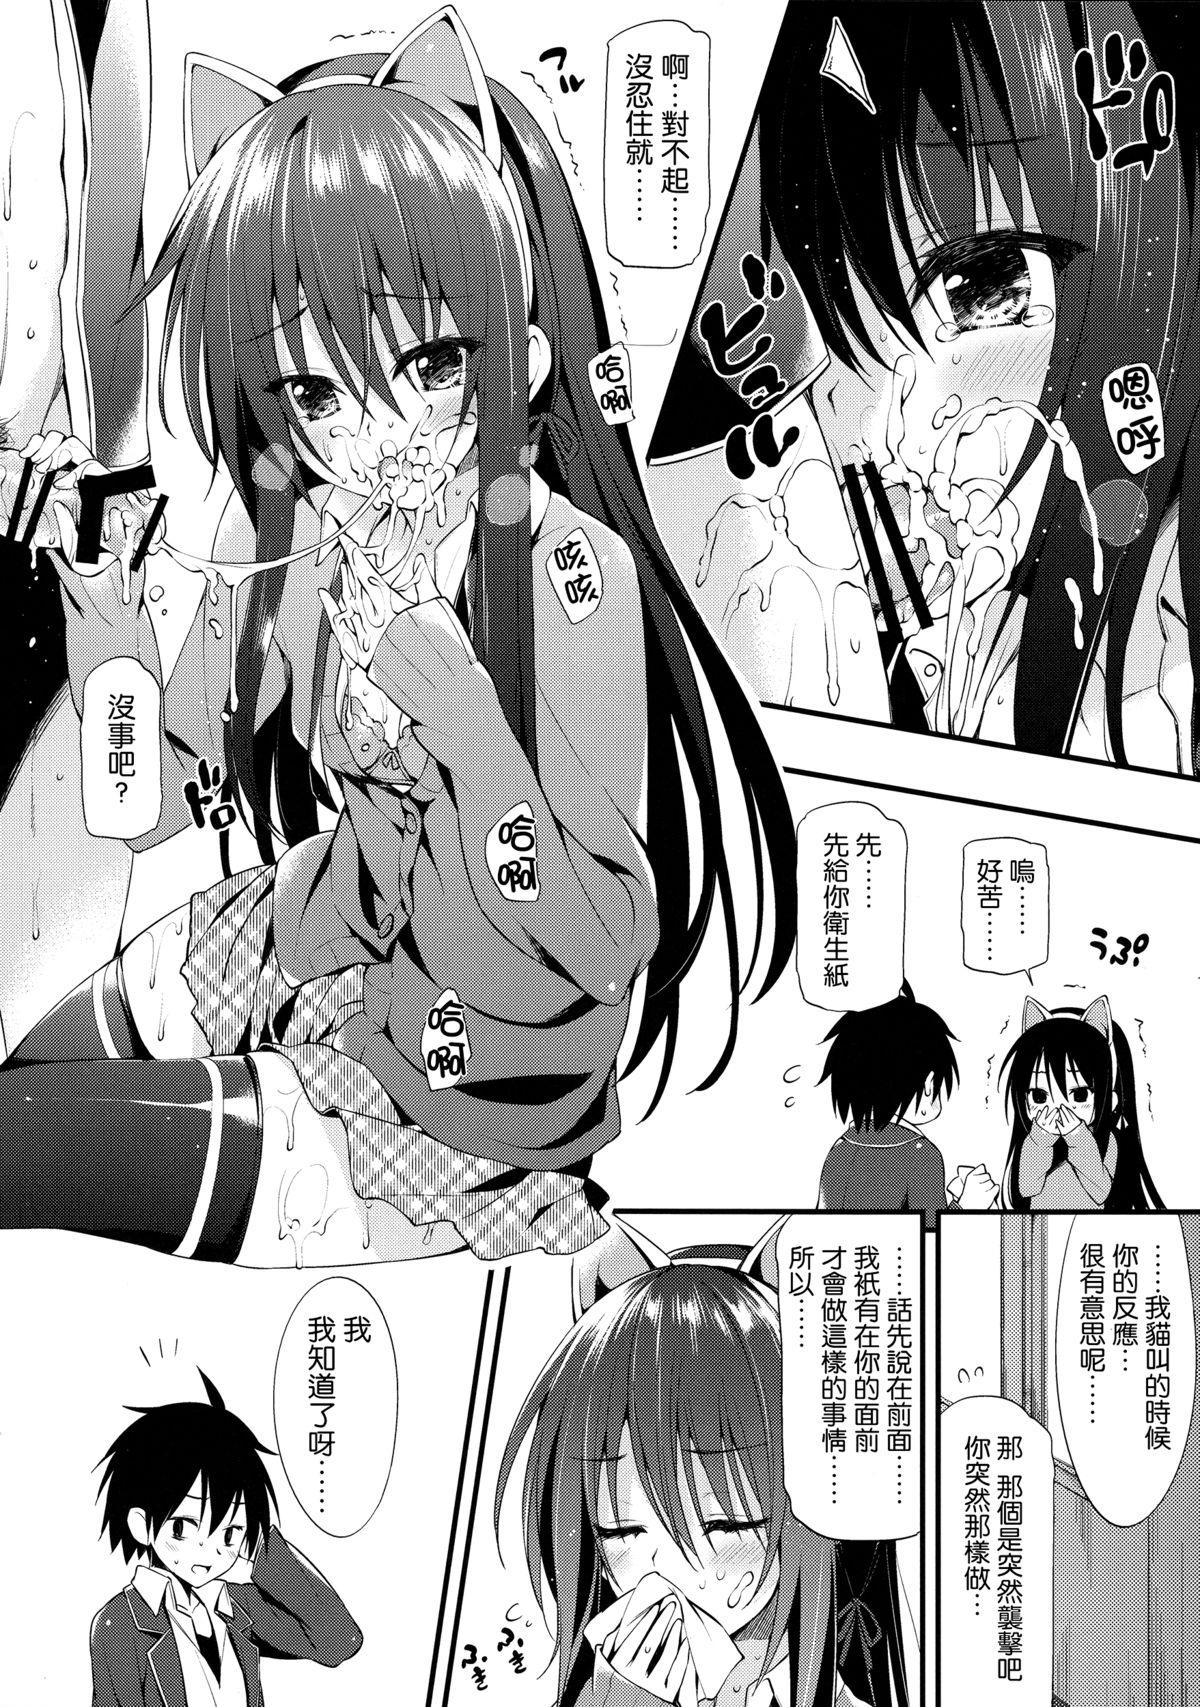 Kissing Yukinon Gentei - Yahari ore no seishun love come wa machigatteiru White - Page 7